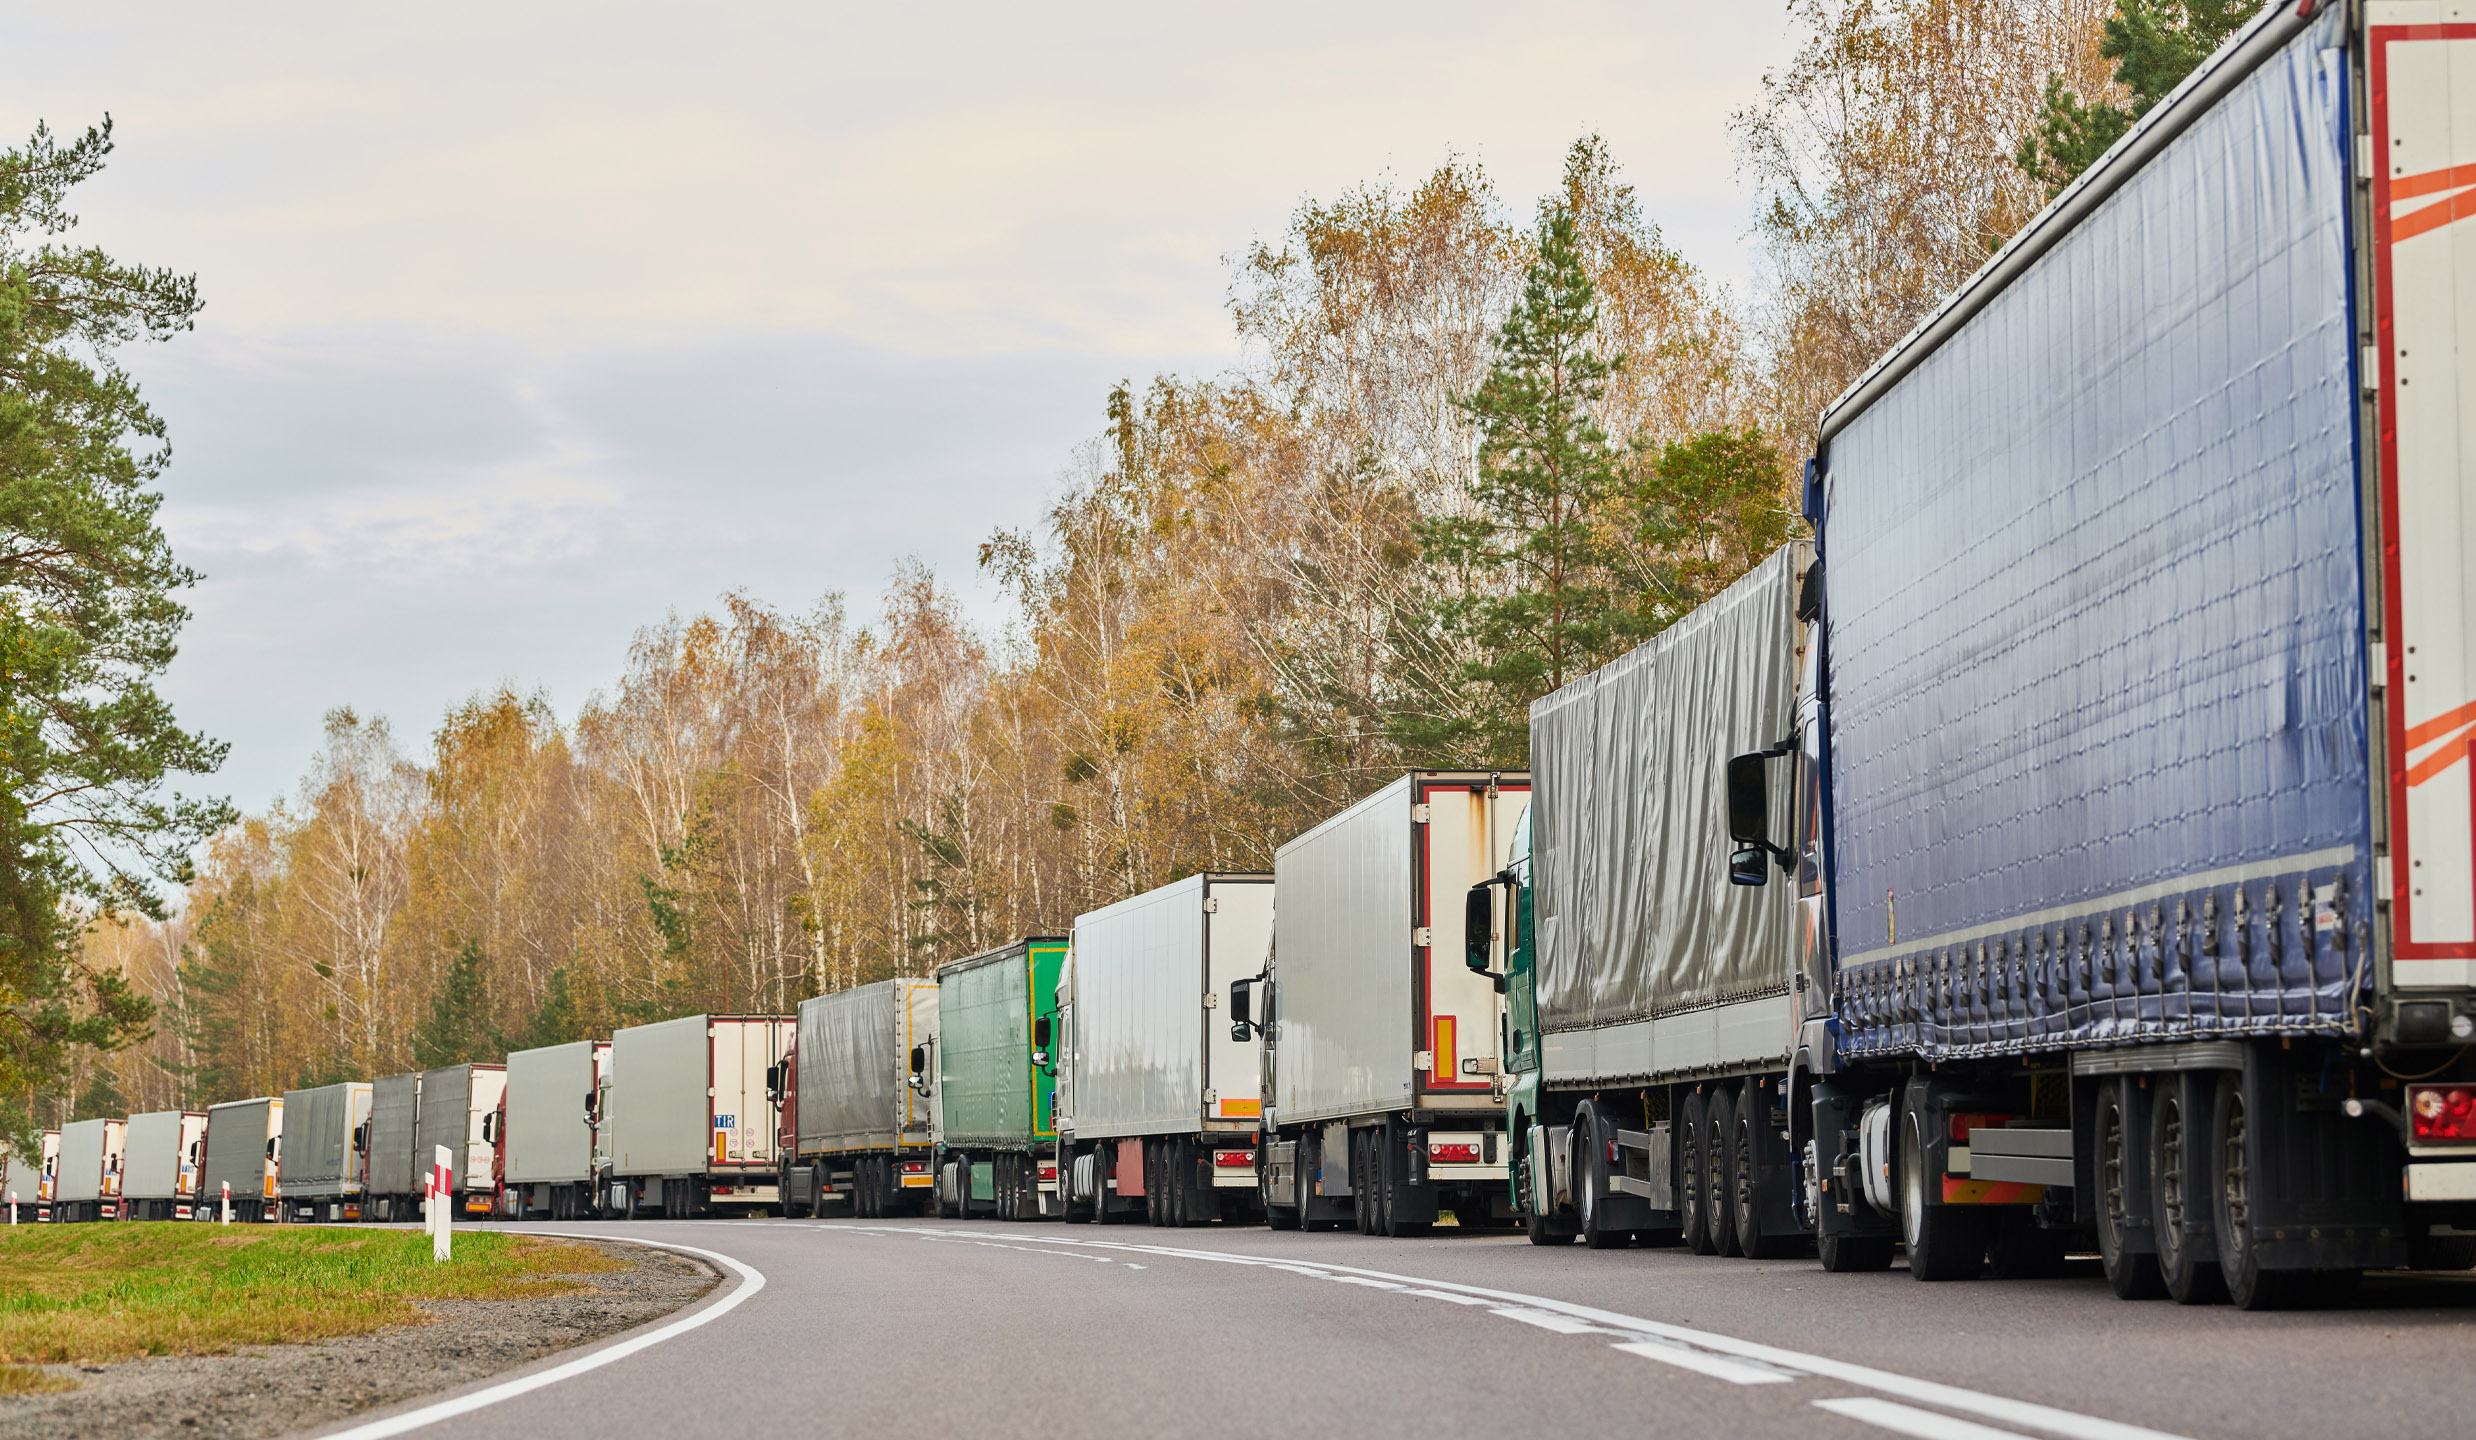 Assistenza alla frenata di emergenza per i camion: la tecnologia eviterà gli incidenti?